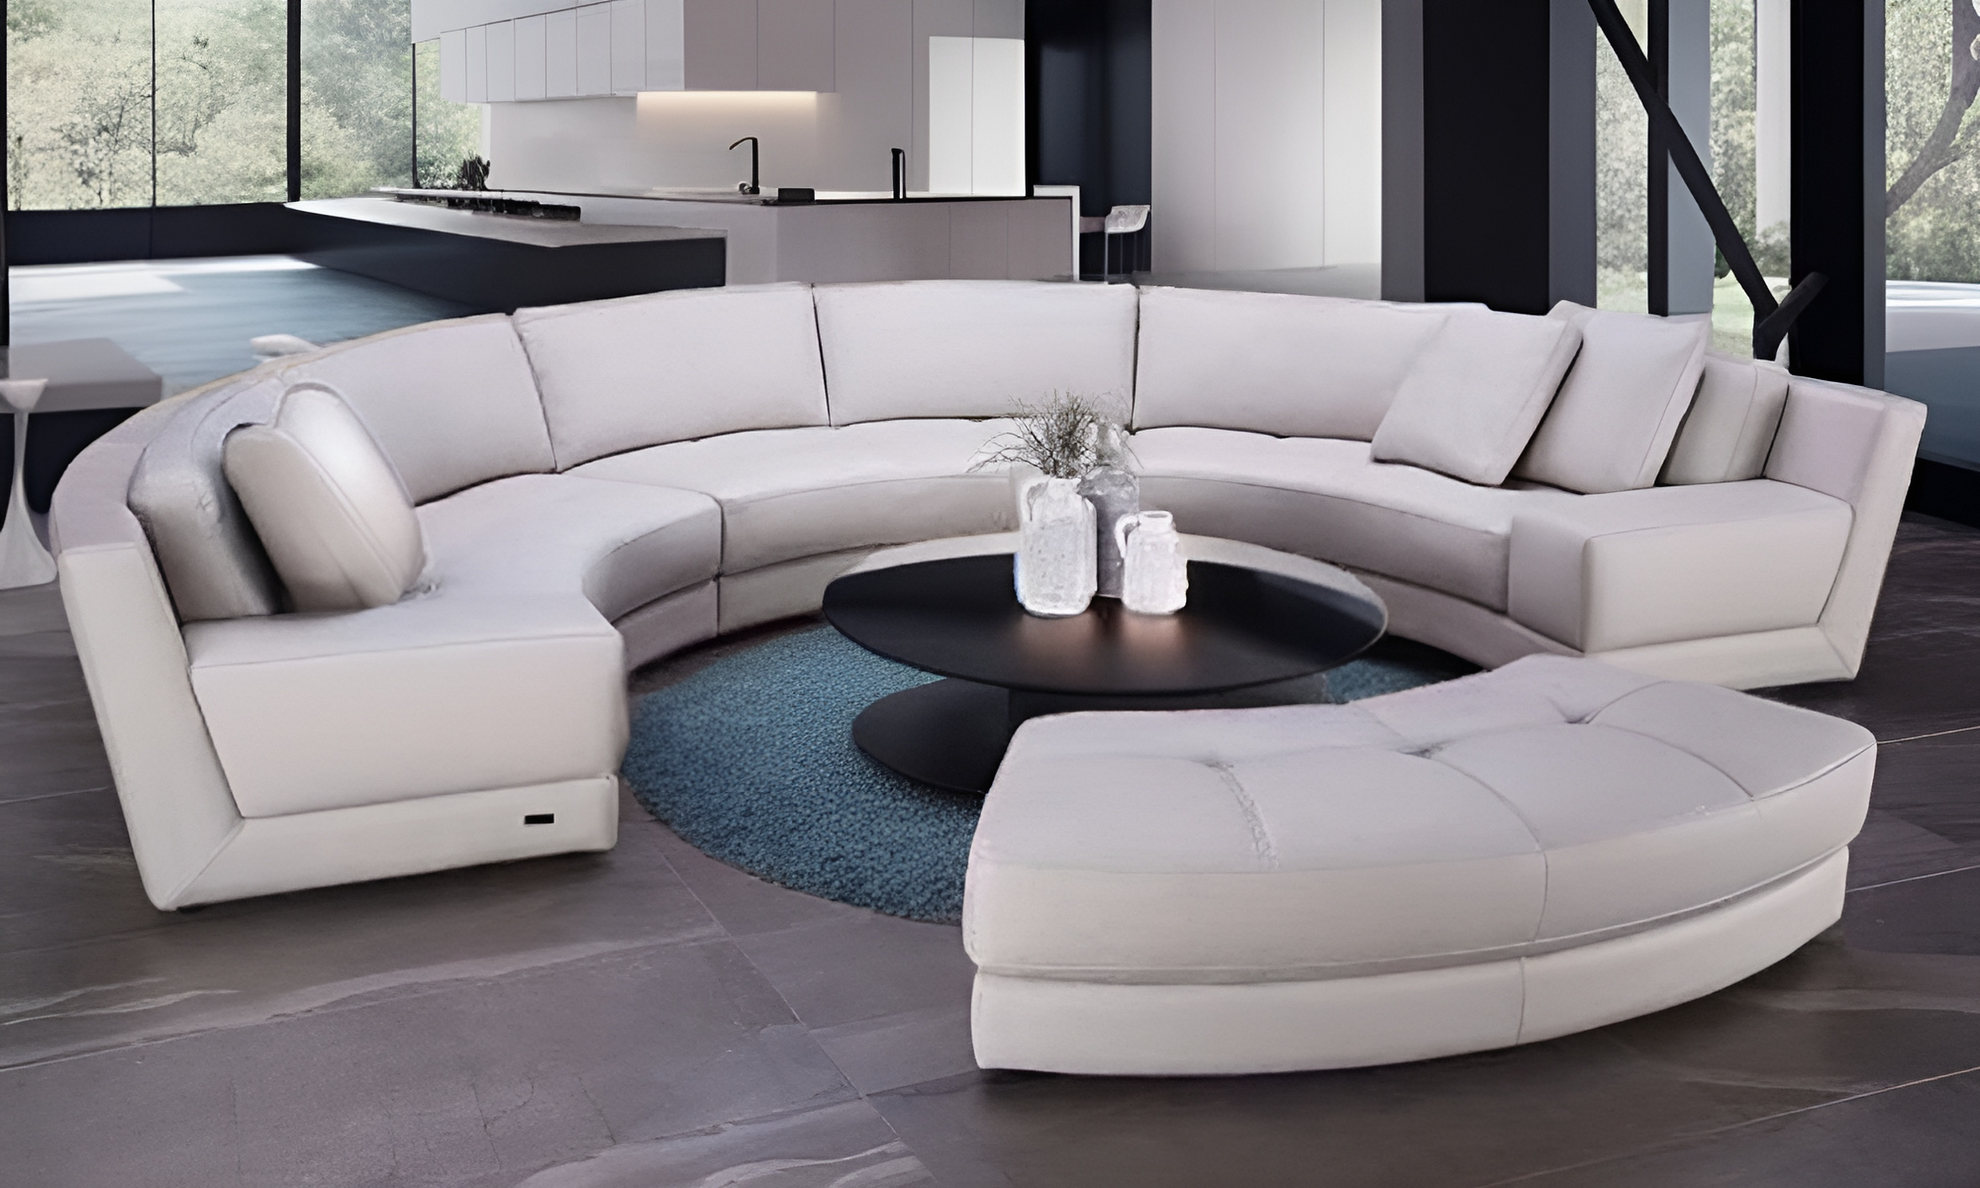 Semi Circular Round Sectional Sofa Set